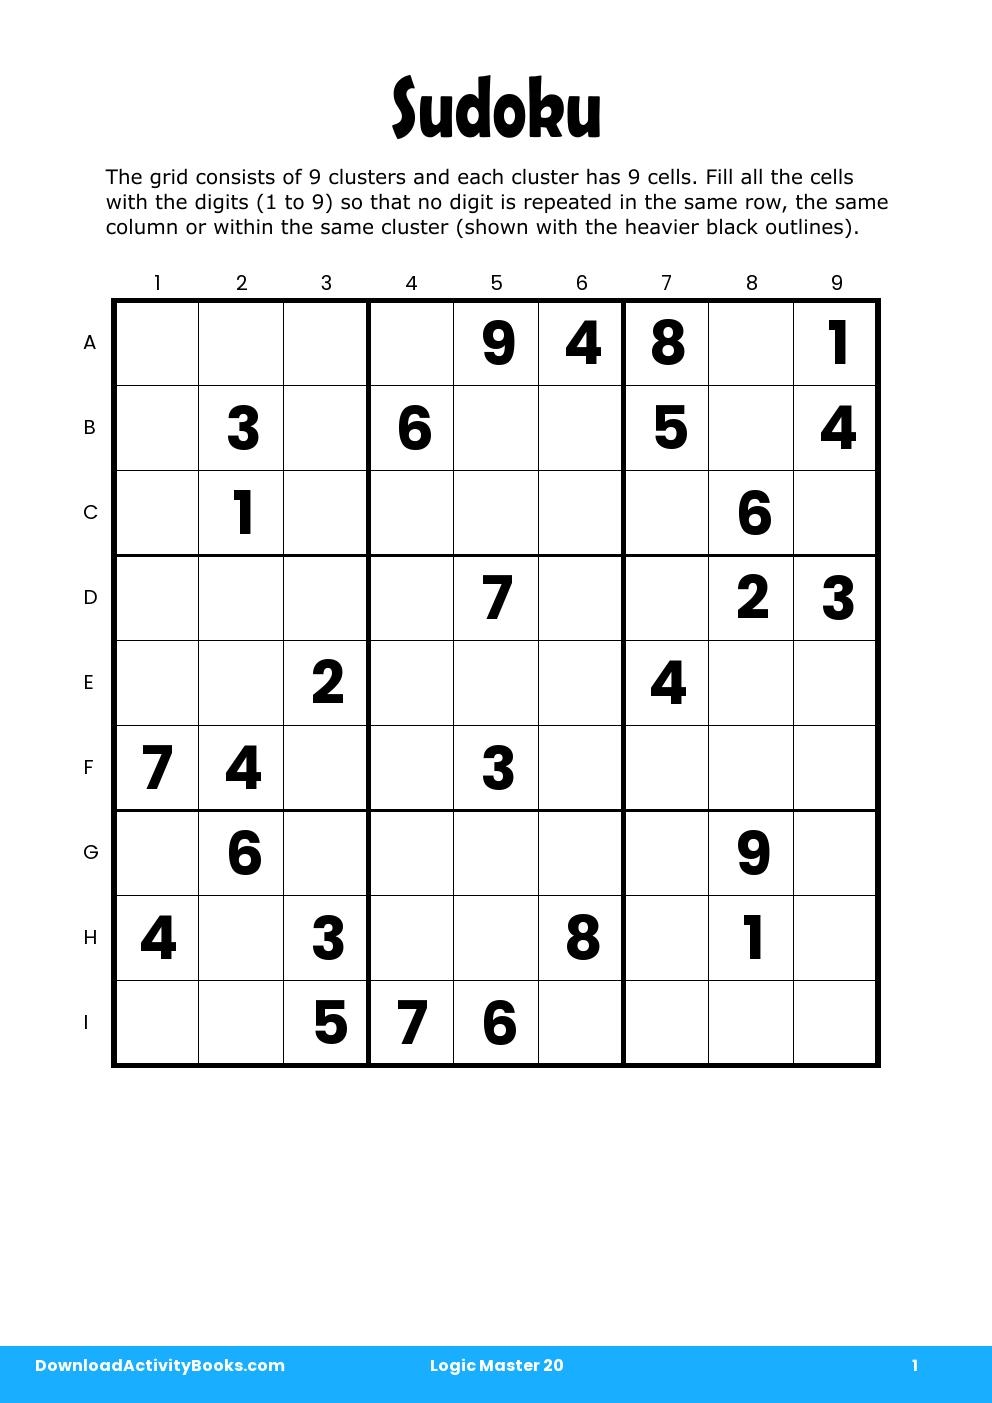 Sudoku in Logic Master 20